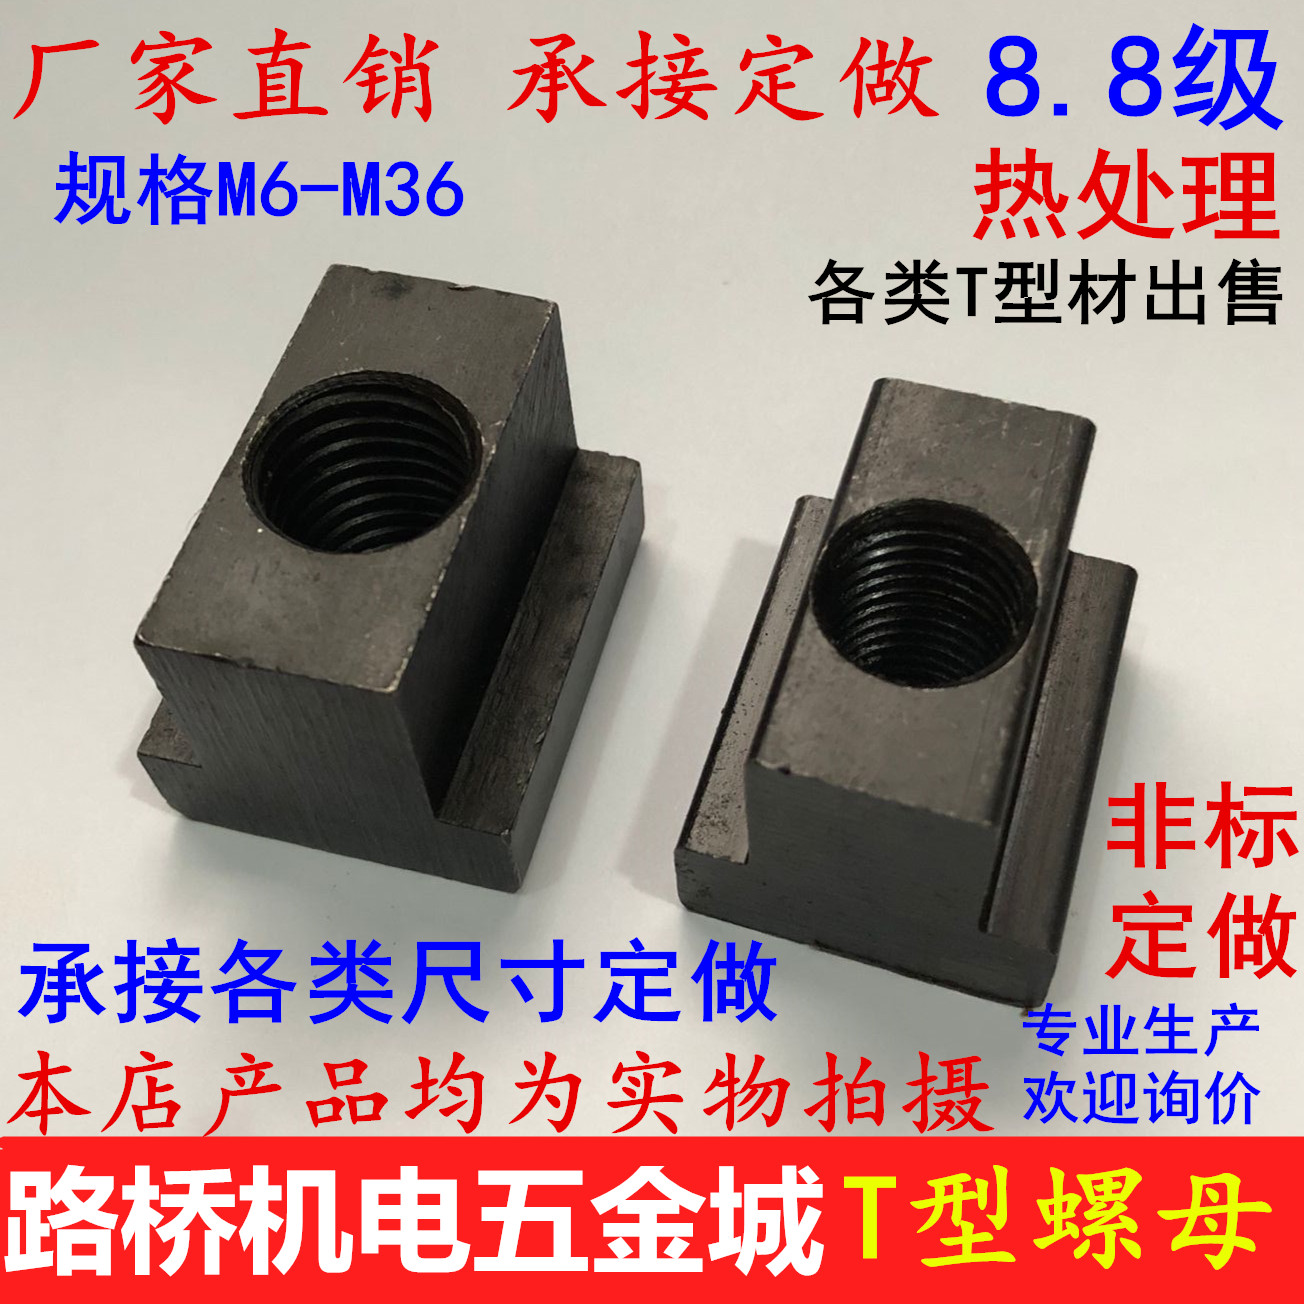 T-nut block T-nut m6M8M10M12M14M16M18M20M24-M36 pressure plate groove nut hardened